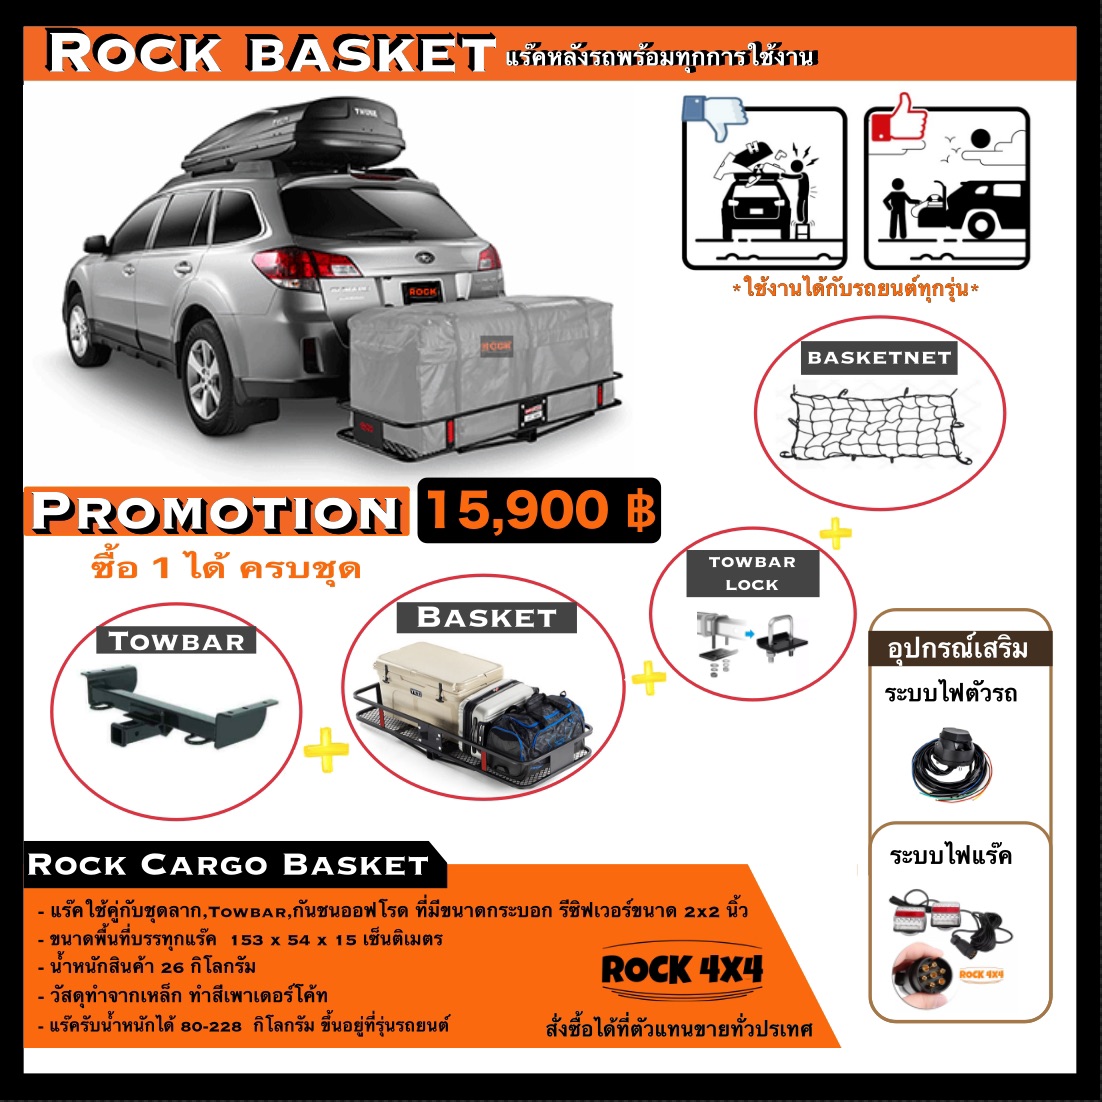 Rockbasket แร๊คติดรถยนต์ นำเข้า สินค้าในไทยพร้อมส่ง